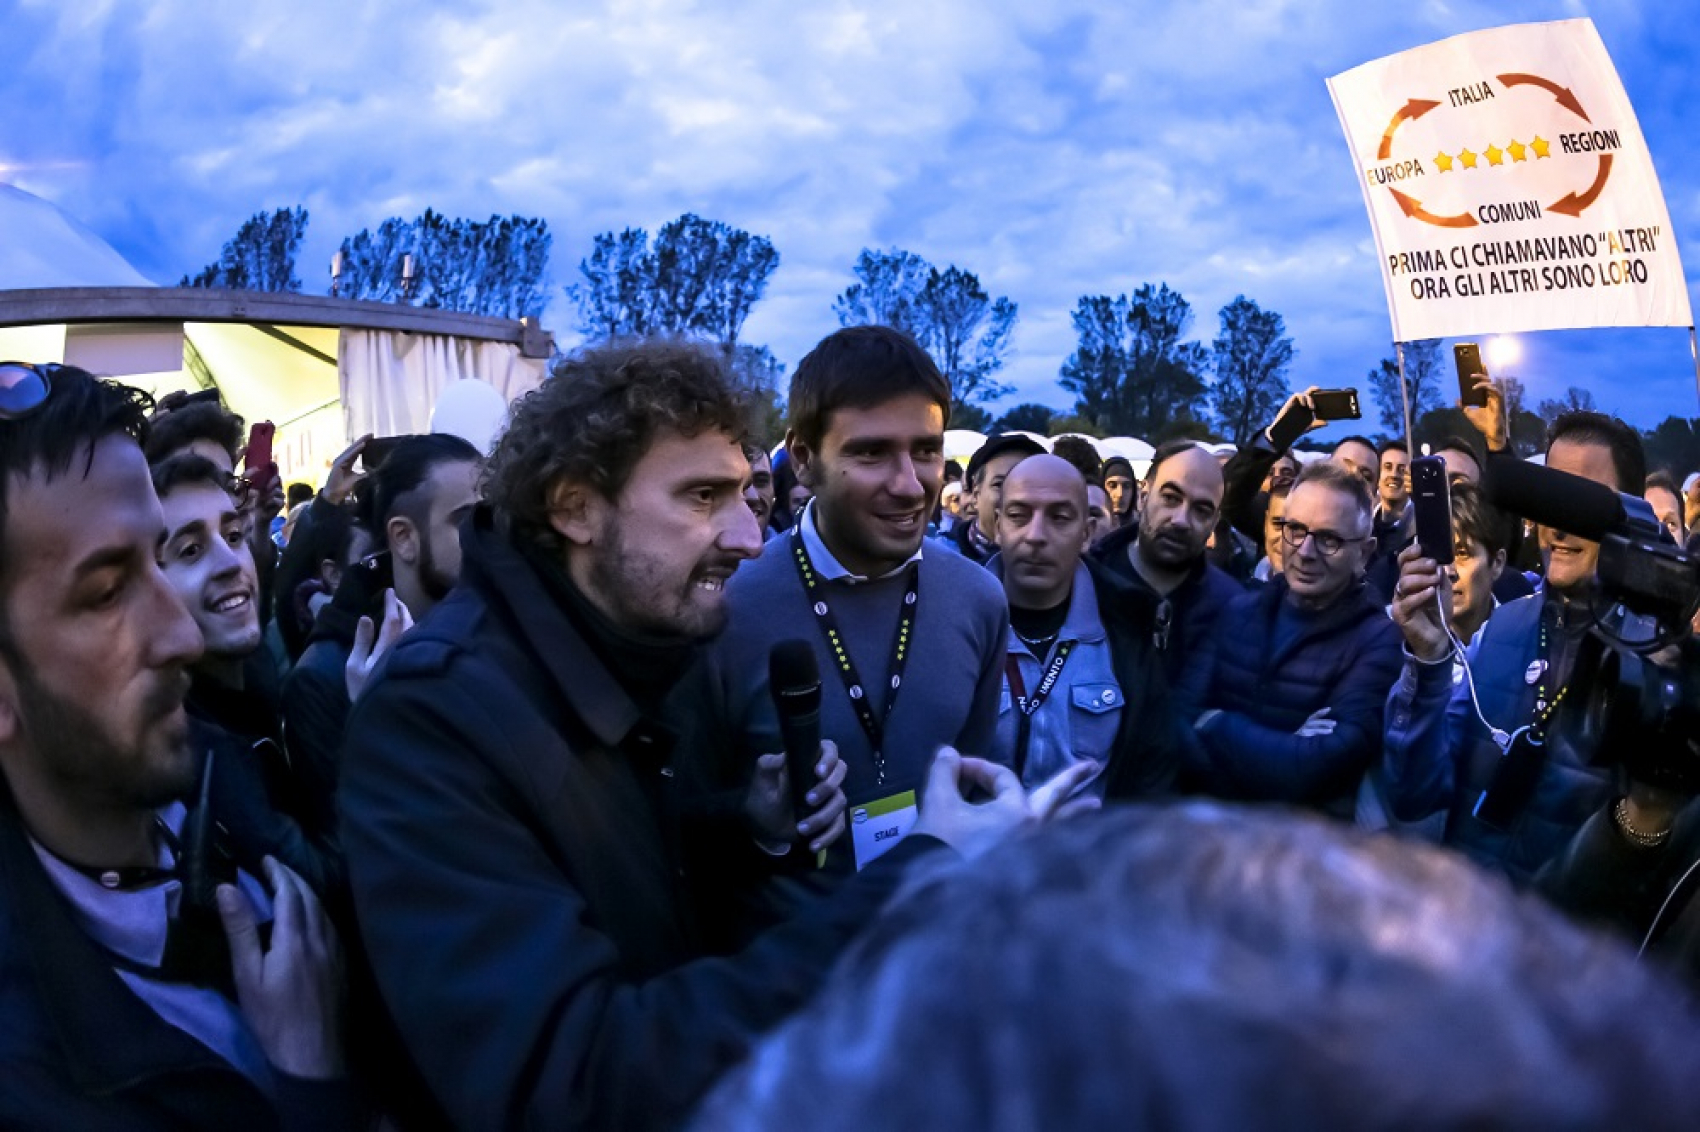 Interview d'Alessandro Di Battista, député italien, lors d'un rassemblement du Mouvement 5 étoiles à Imola, Italie © iStockphoto.com/bennymarty